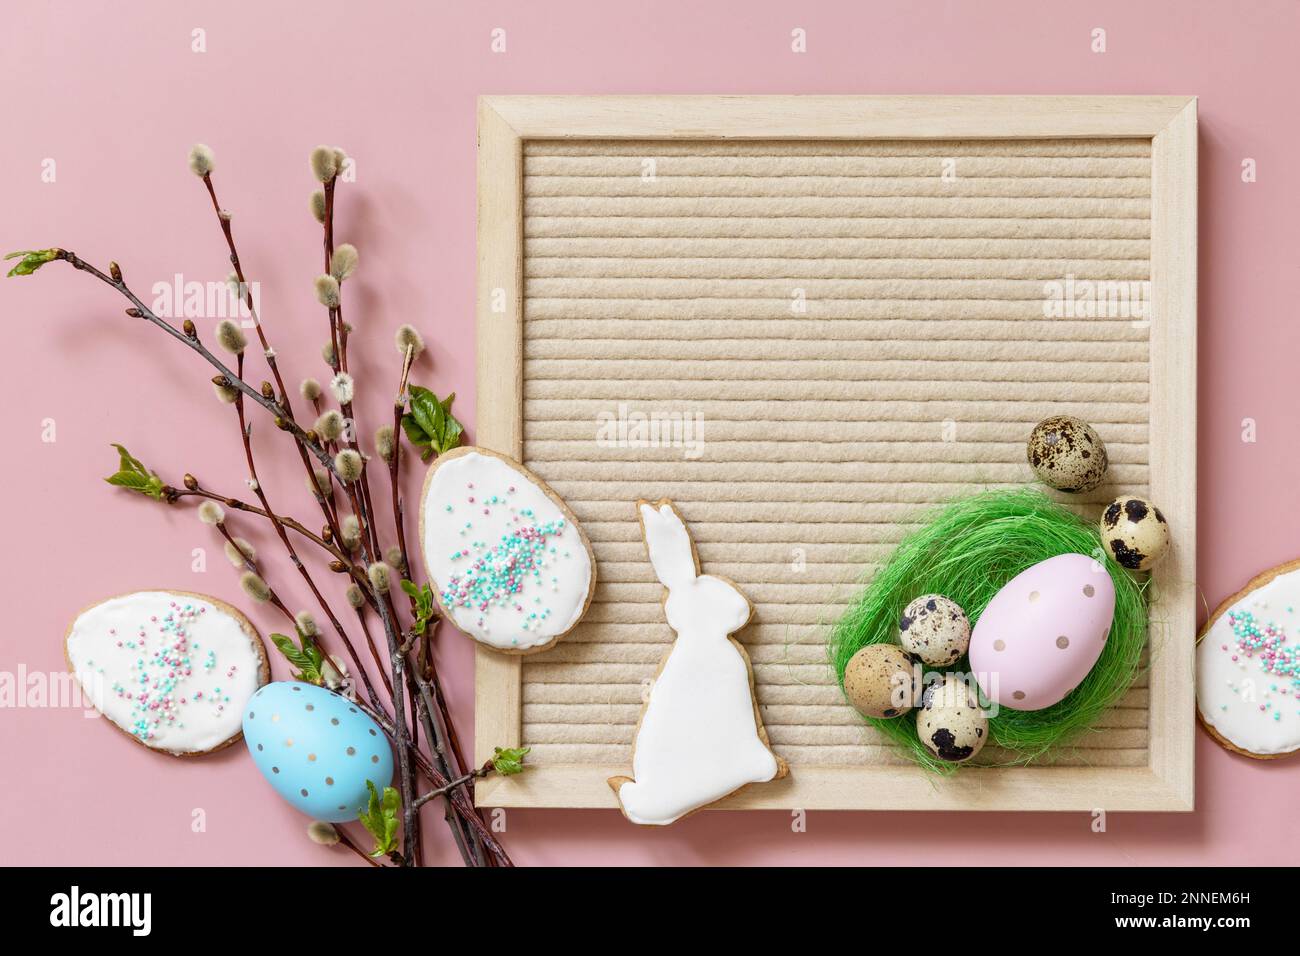 Disposition de bienvenue au printemps. Carton, œufs colorés et branches vertes sur fond rose, composition minimaliste. Vue de dessus. Banque D'Images